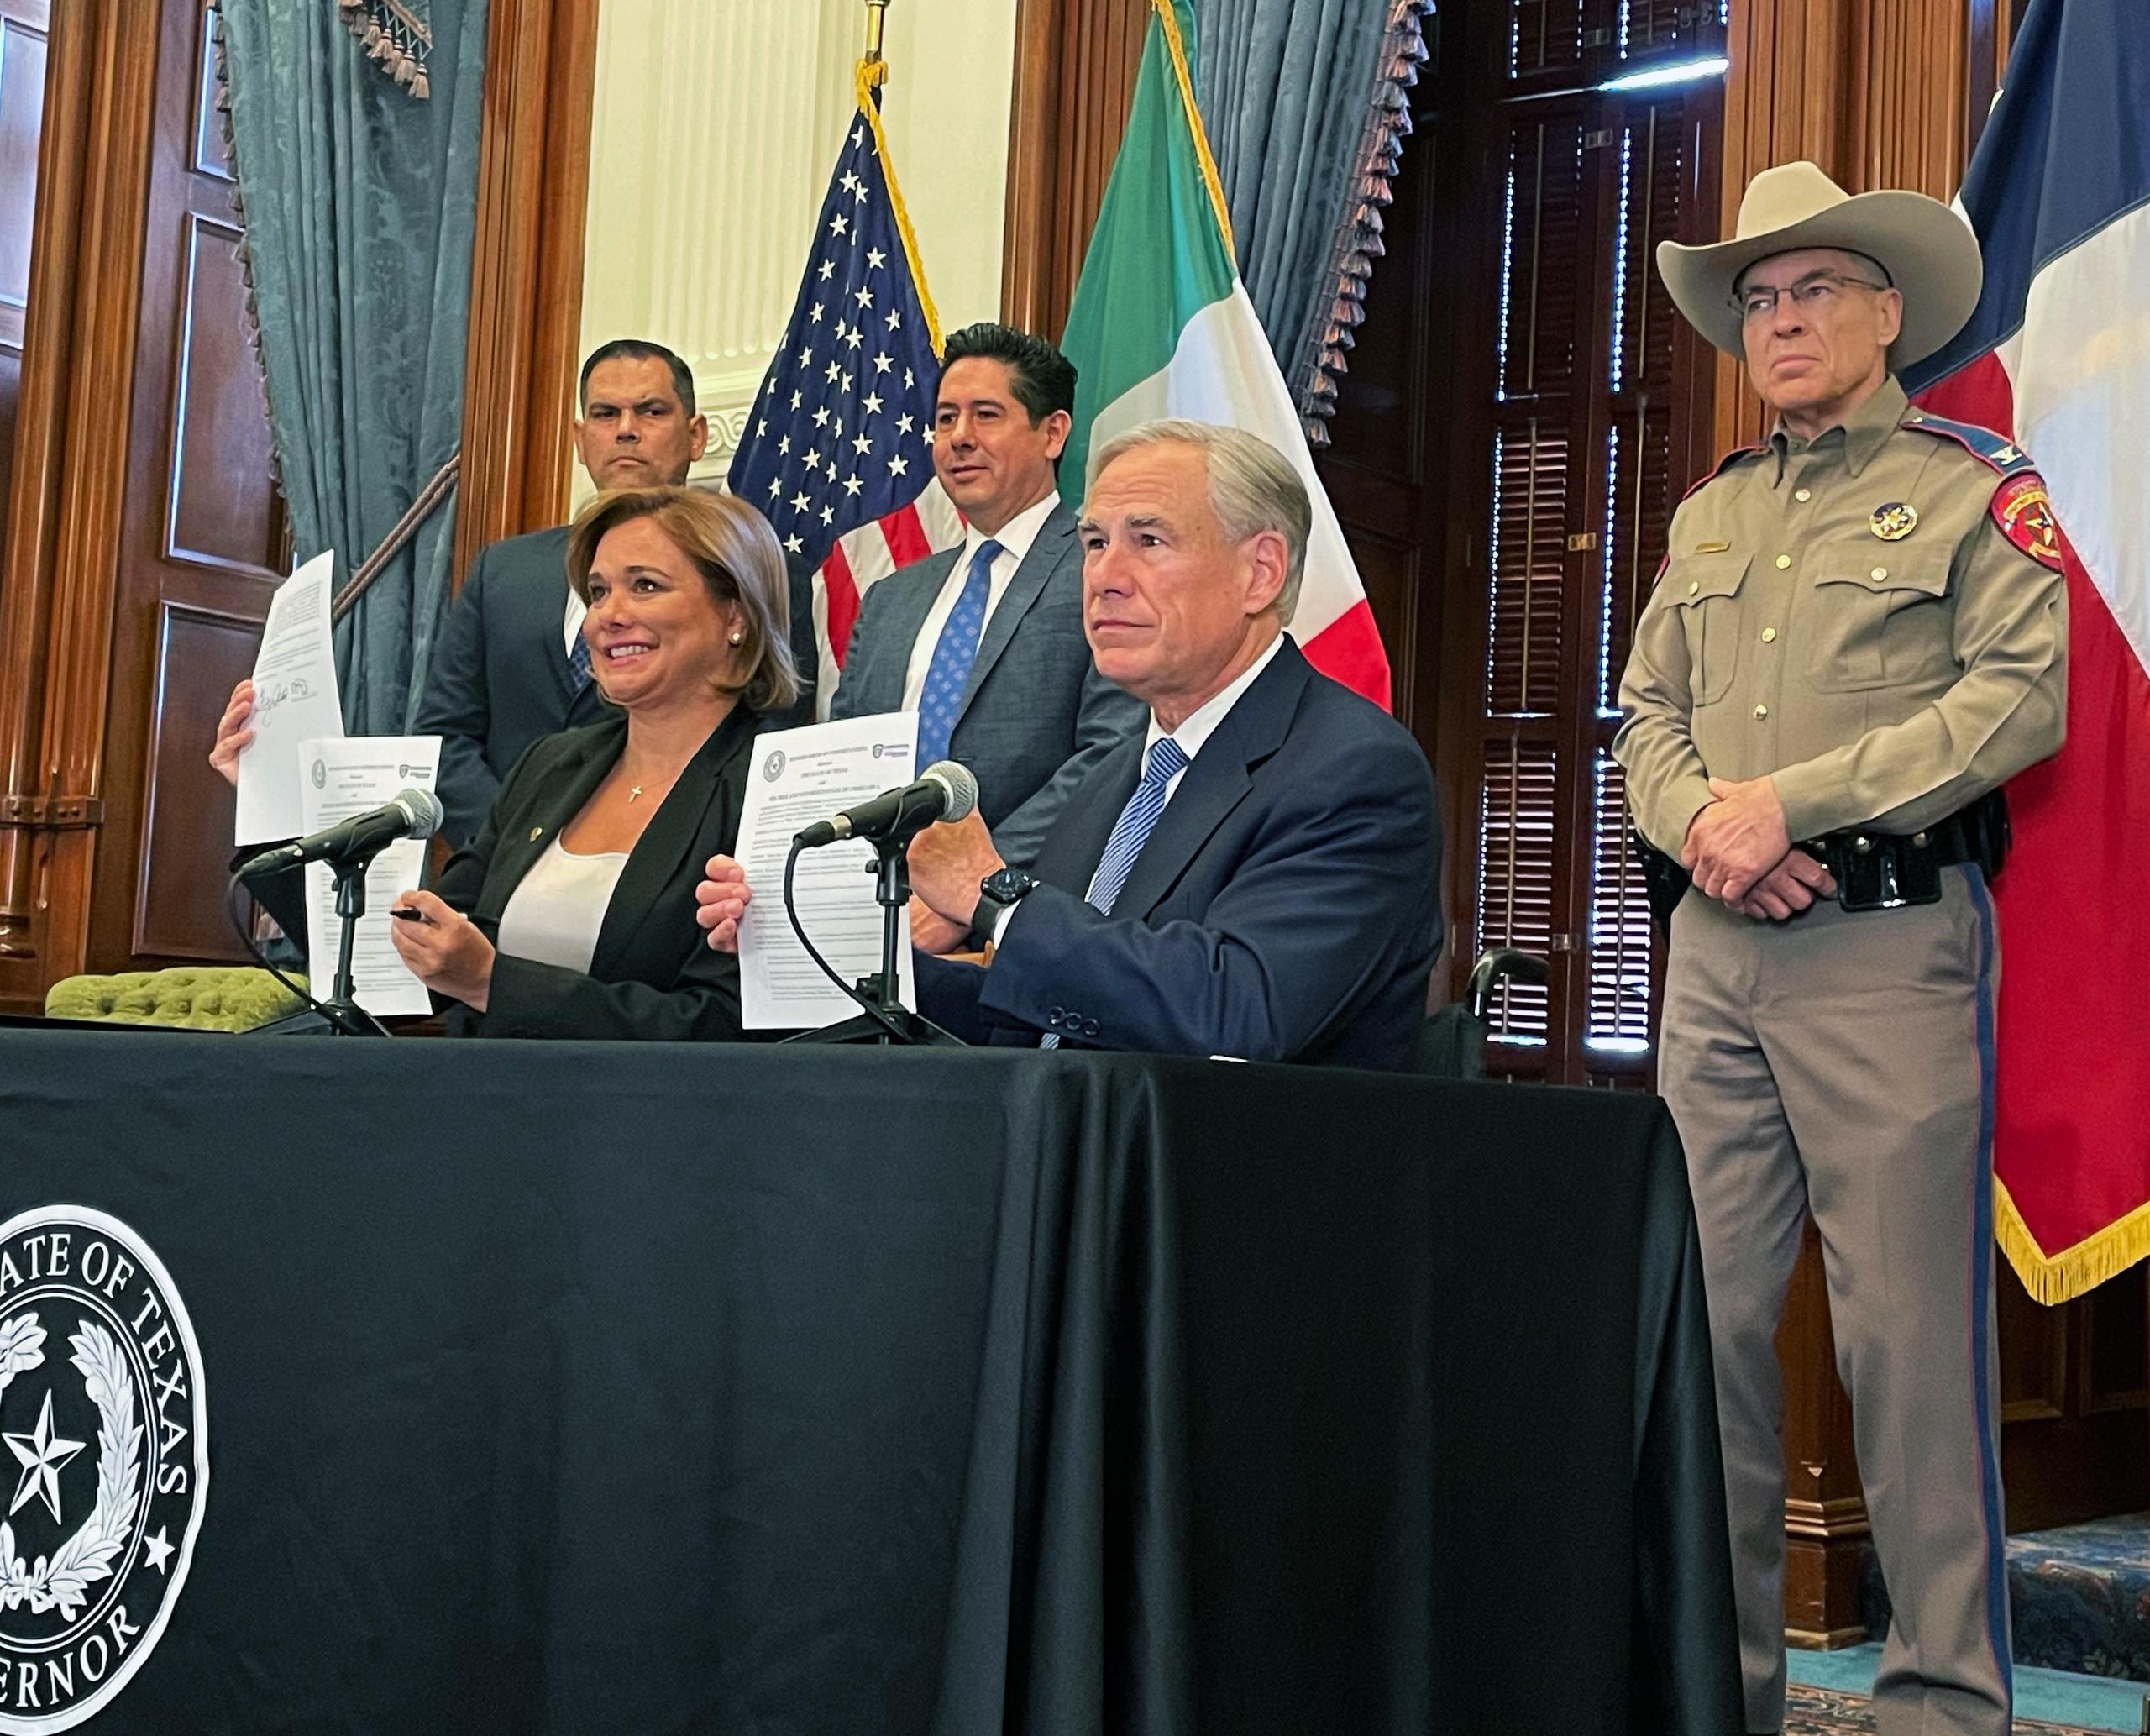 El gobernador de Texas, Greg Abbott, vetó la orden en momentos que su agenda para atajar inmigrantes se agua bajo la administración del presidente Joe Biden.